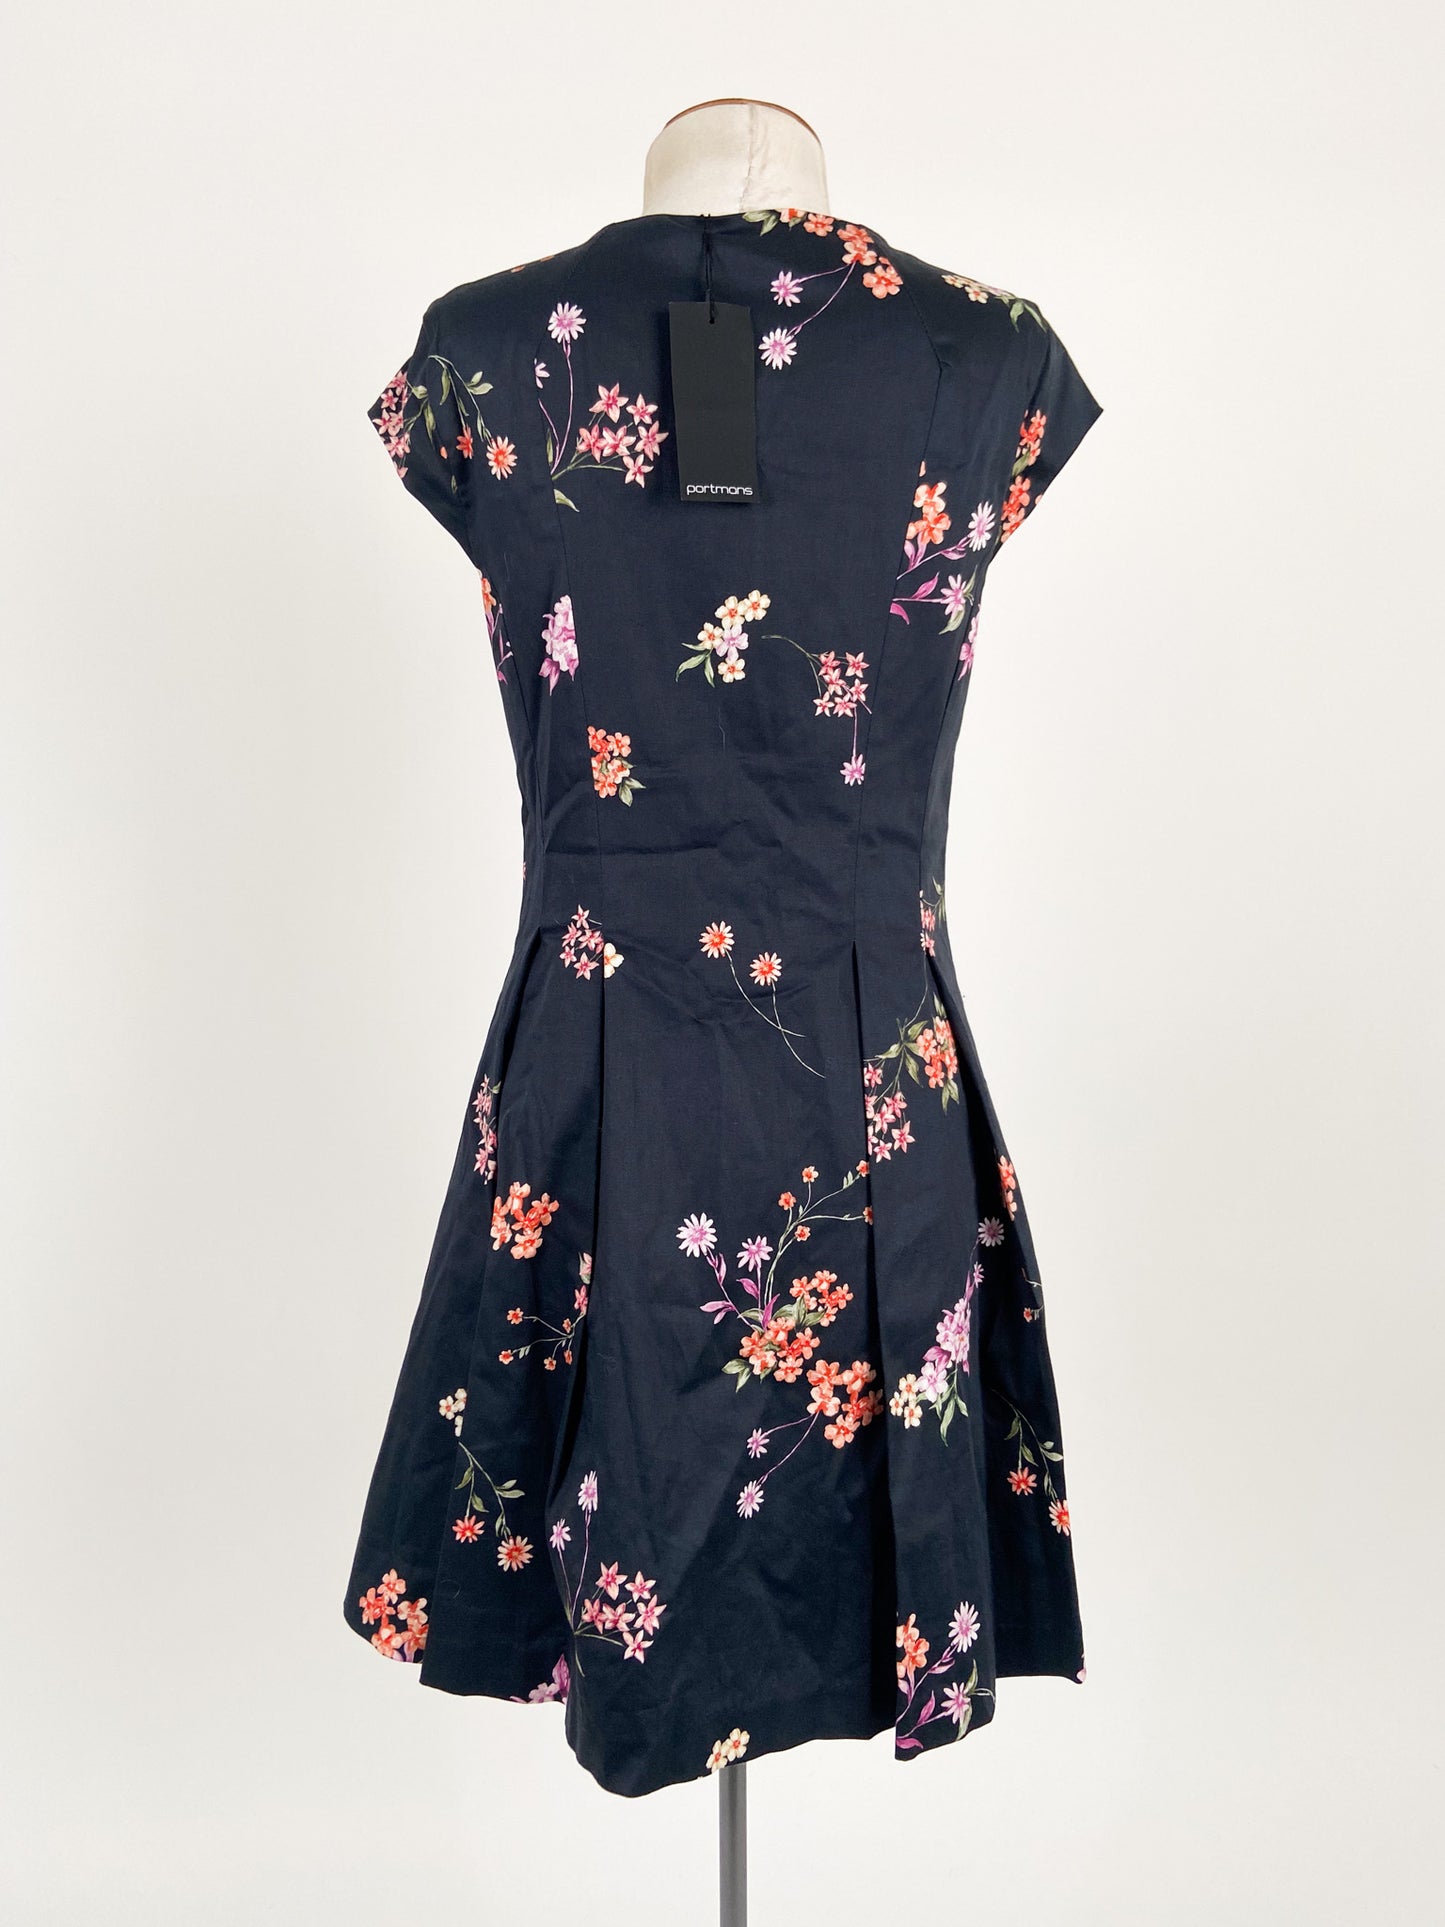 Portmans | Navy Casual/Workwear Dress | Size 8